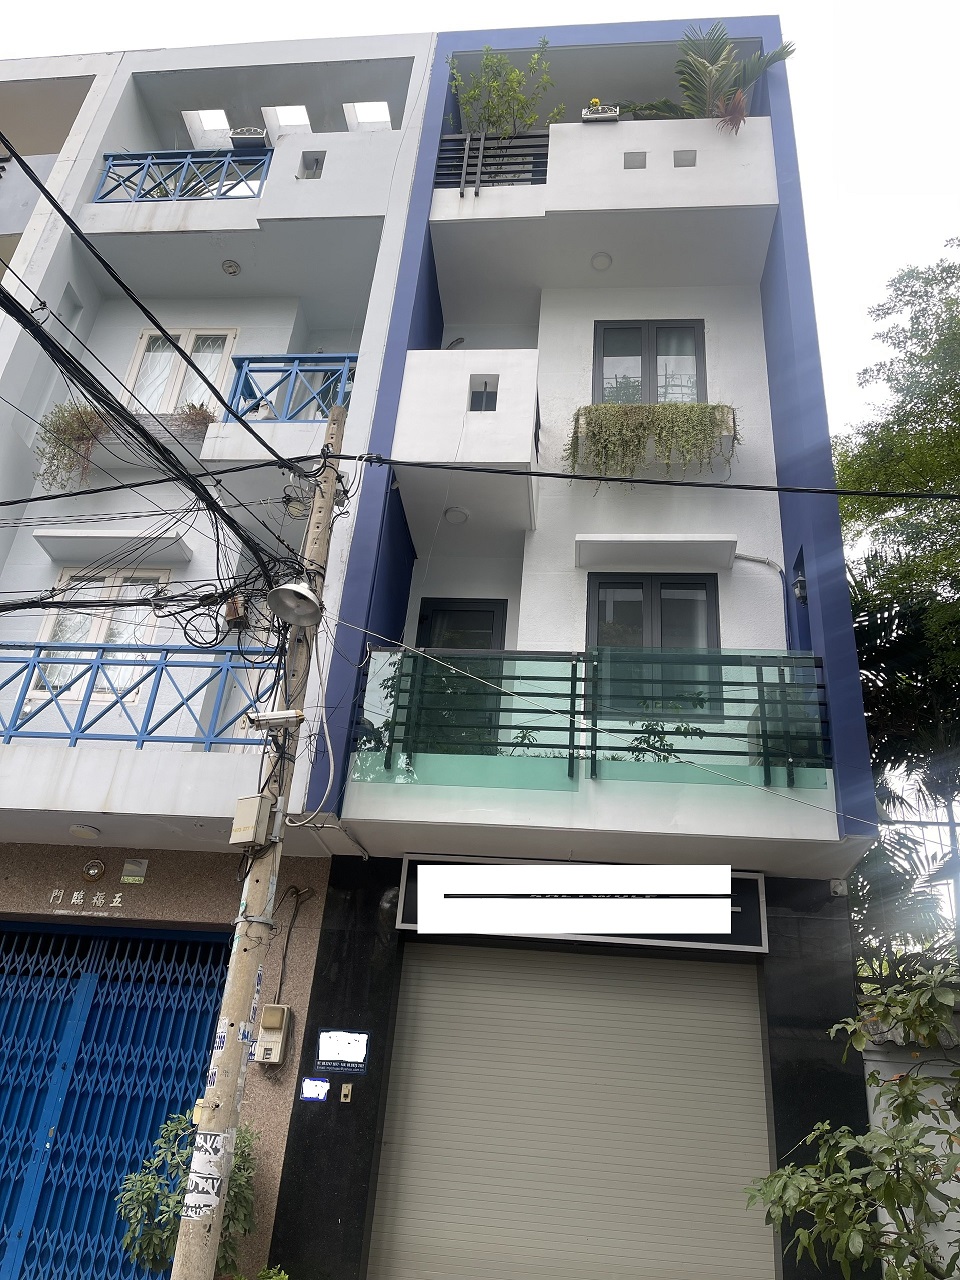 Bán nhà mặt tiền đường Huỳnh Thiện Lộc, quận Tân Phú, 65,4m², Giá 10,5 tỷ